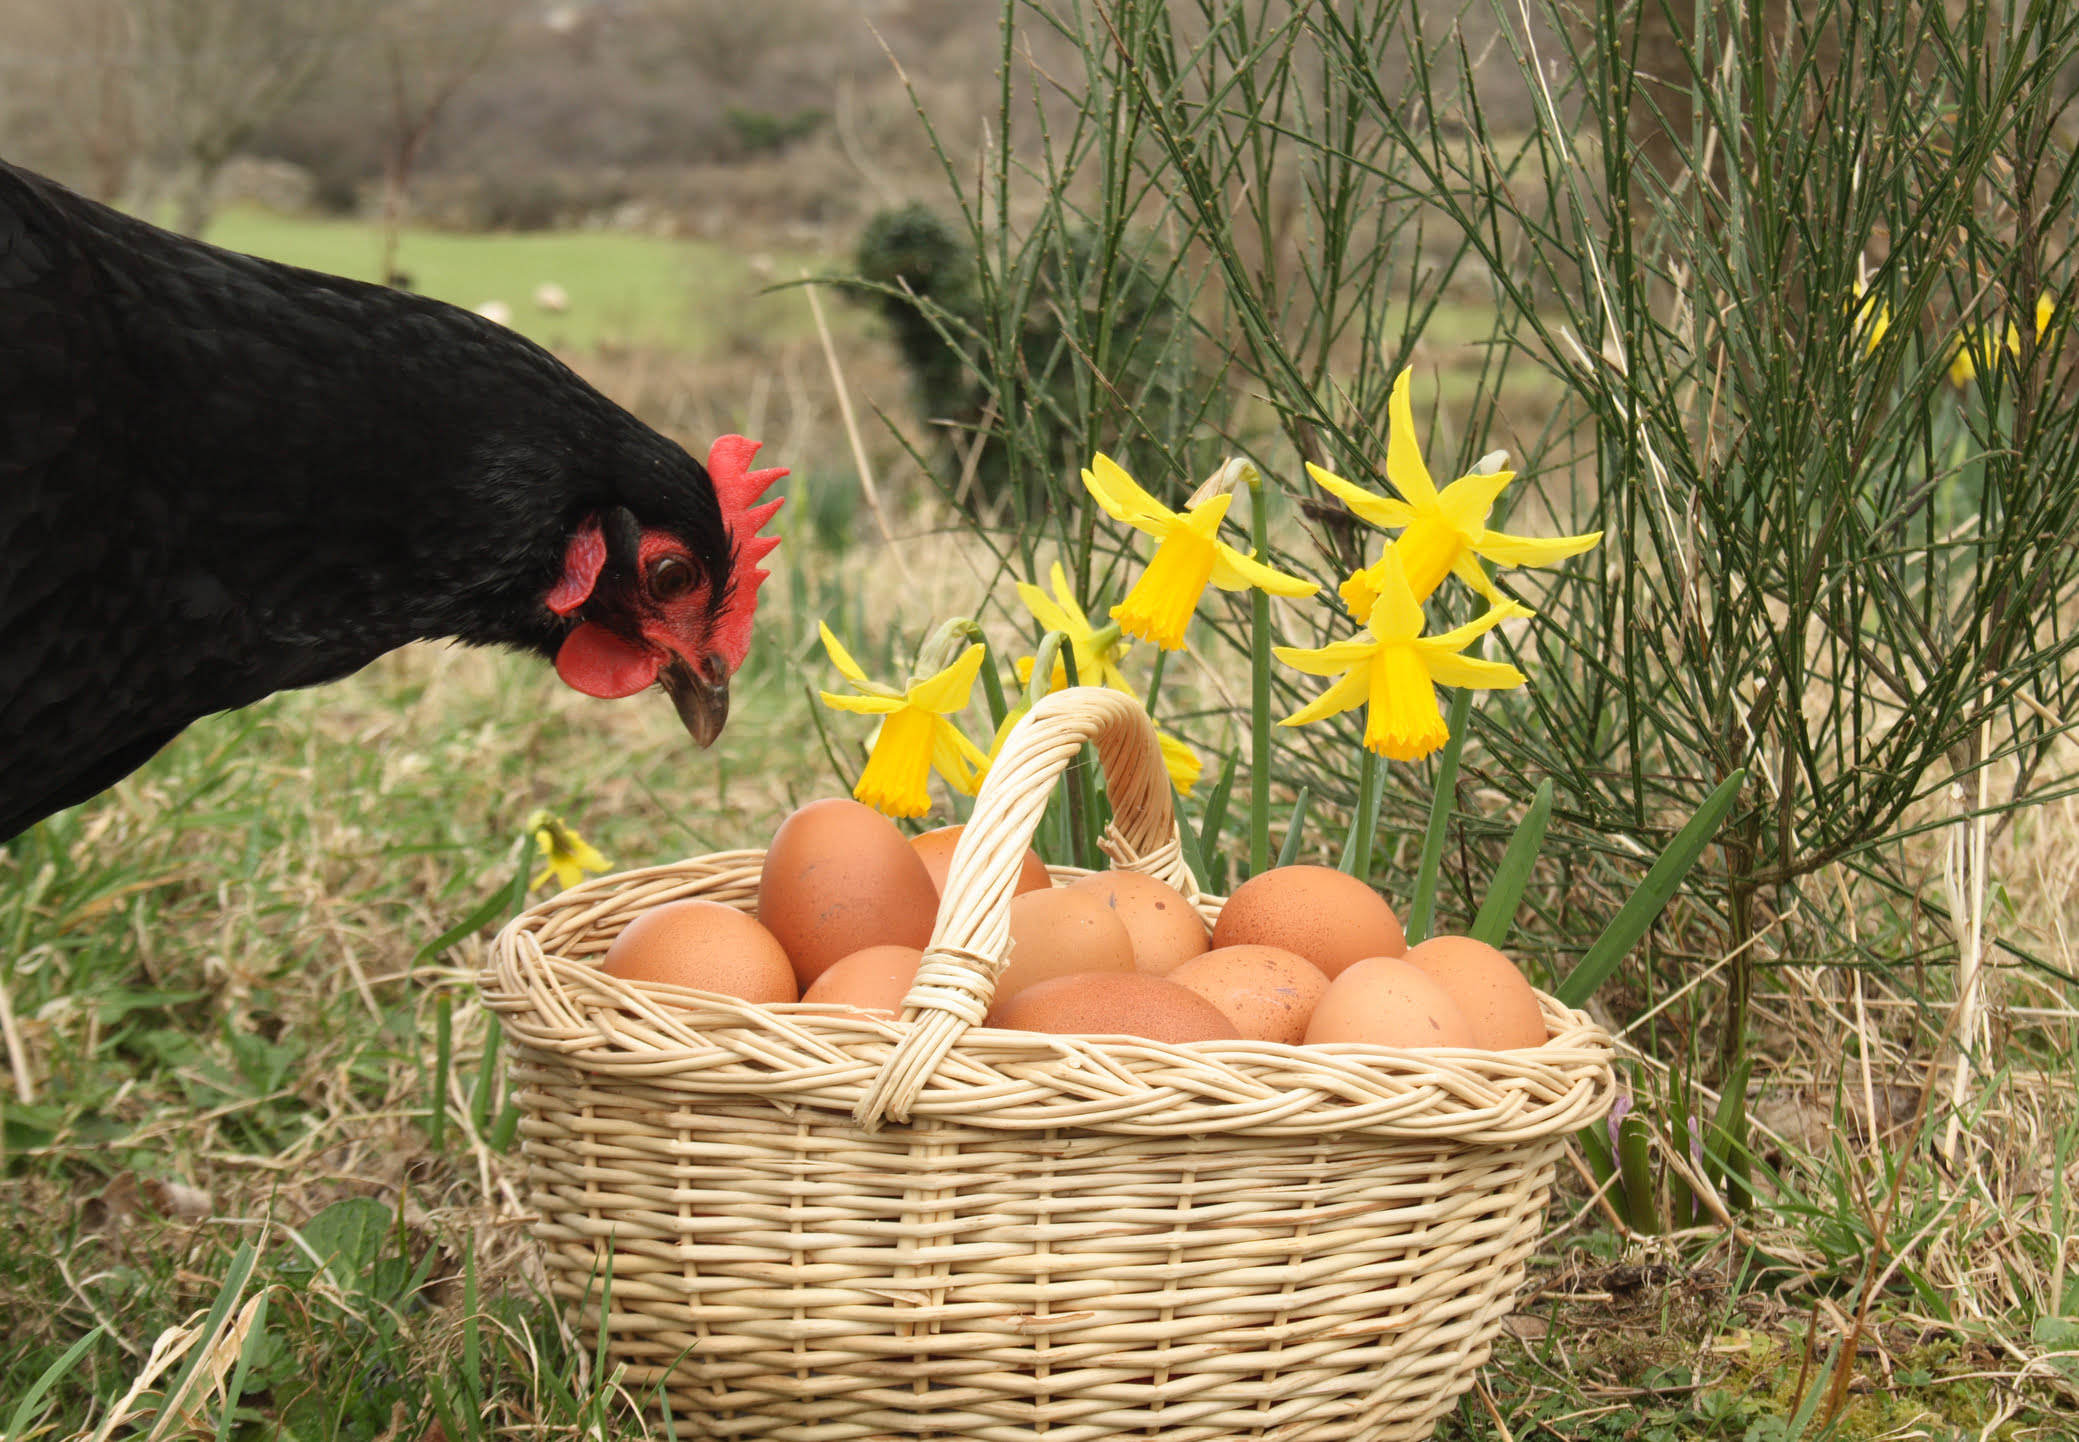 start an ethical business running a free-range chicken farm